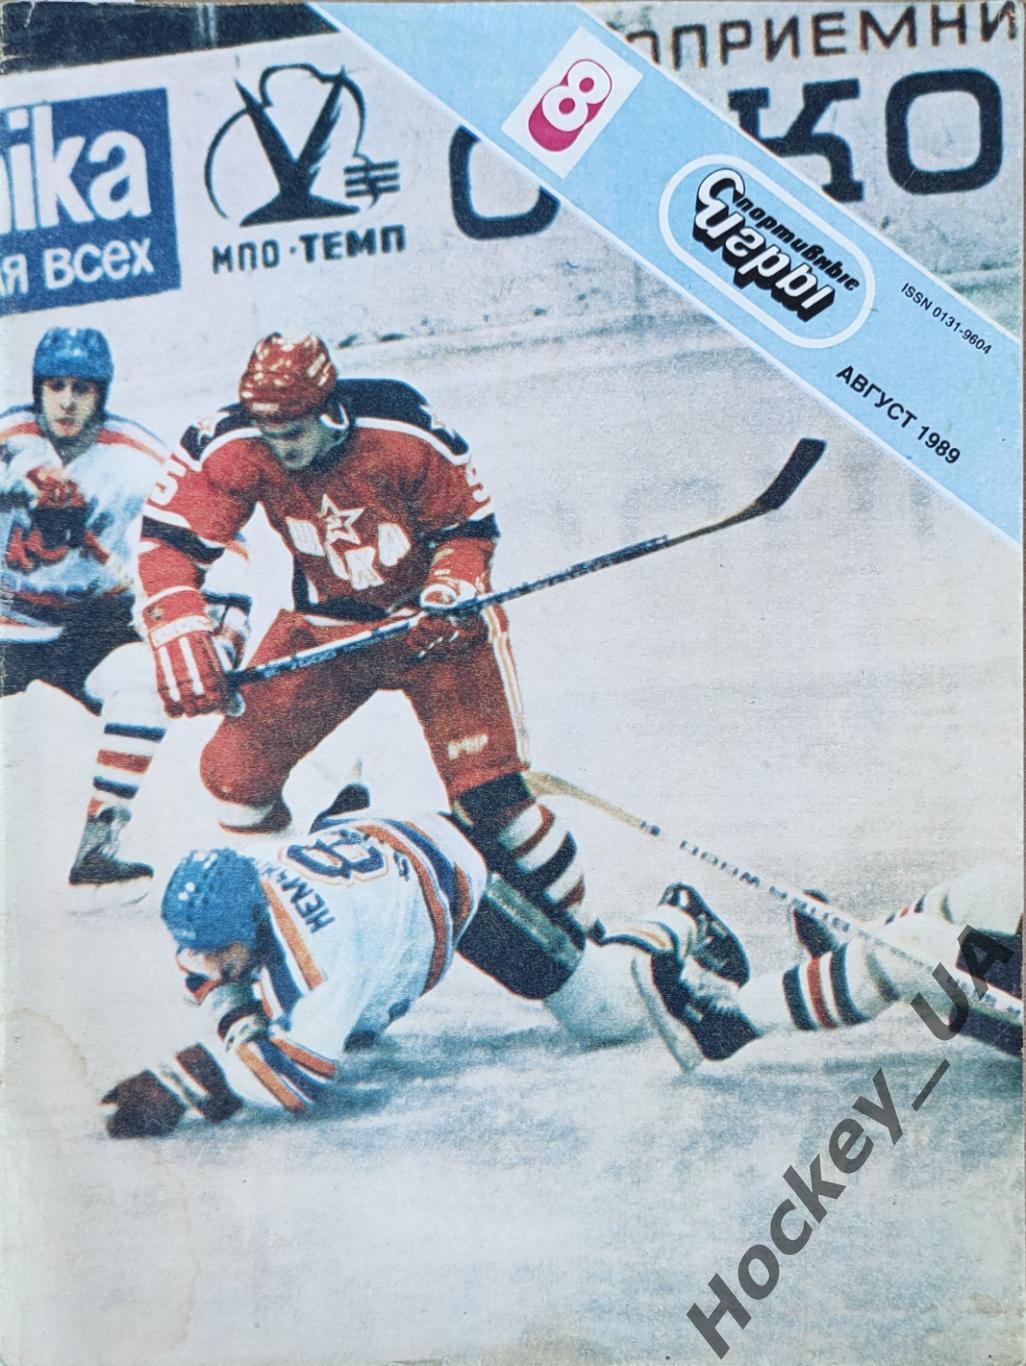 Журнал Спортивные игры №8 1989 год.